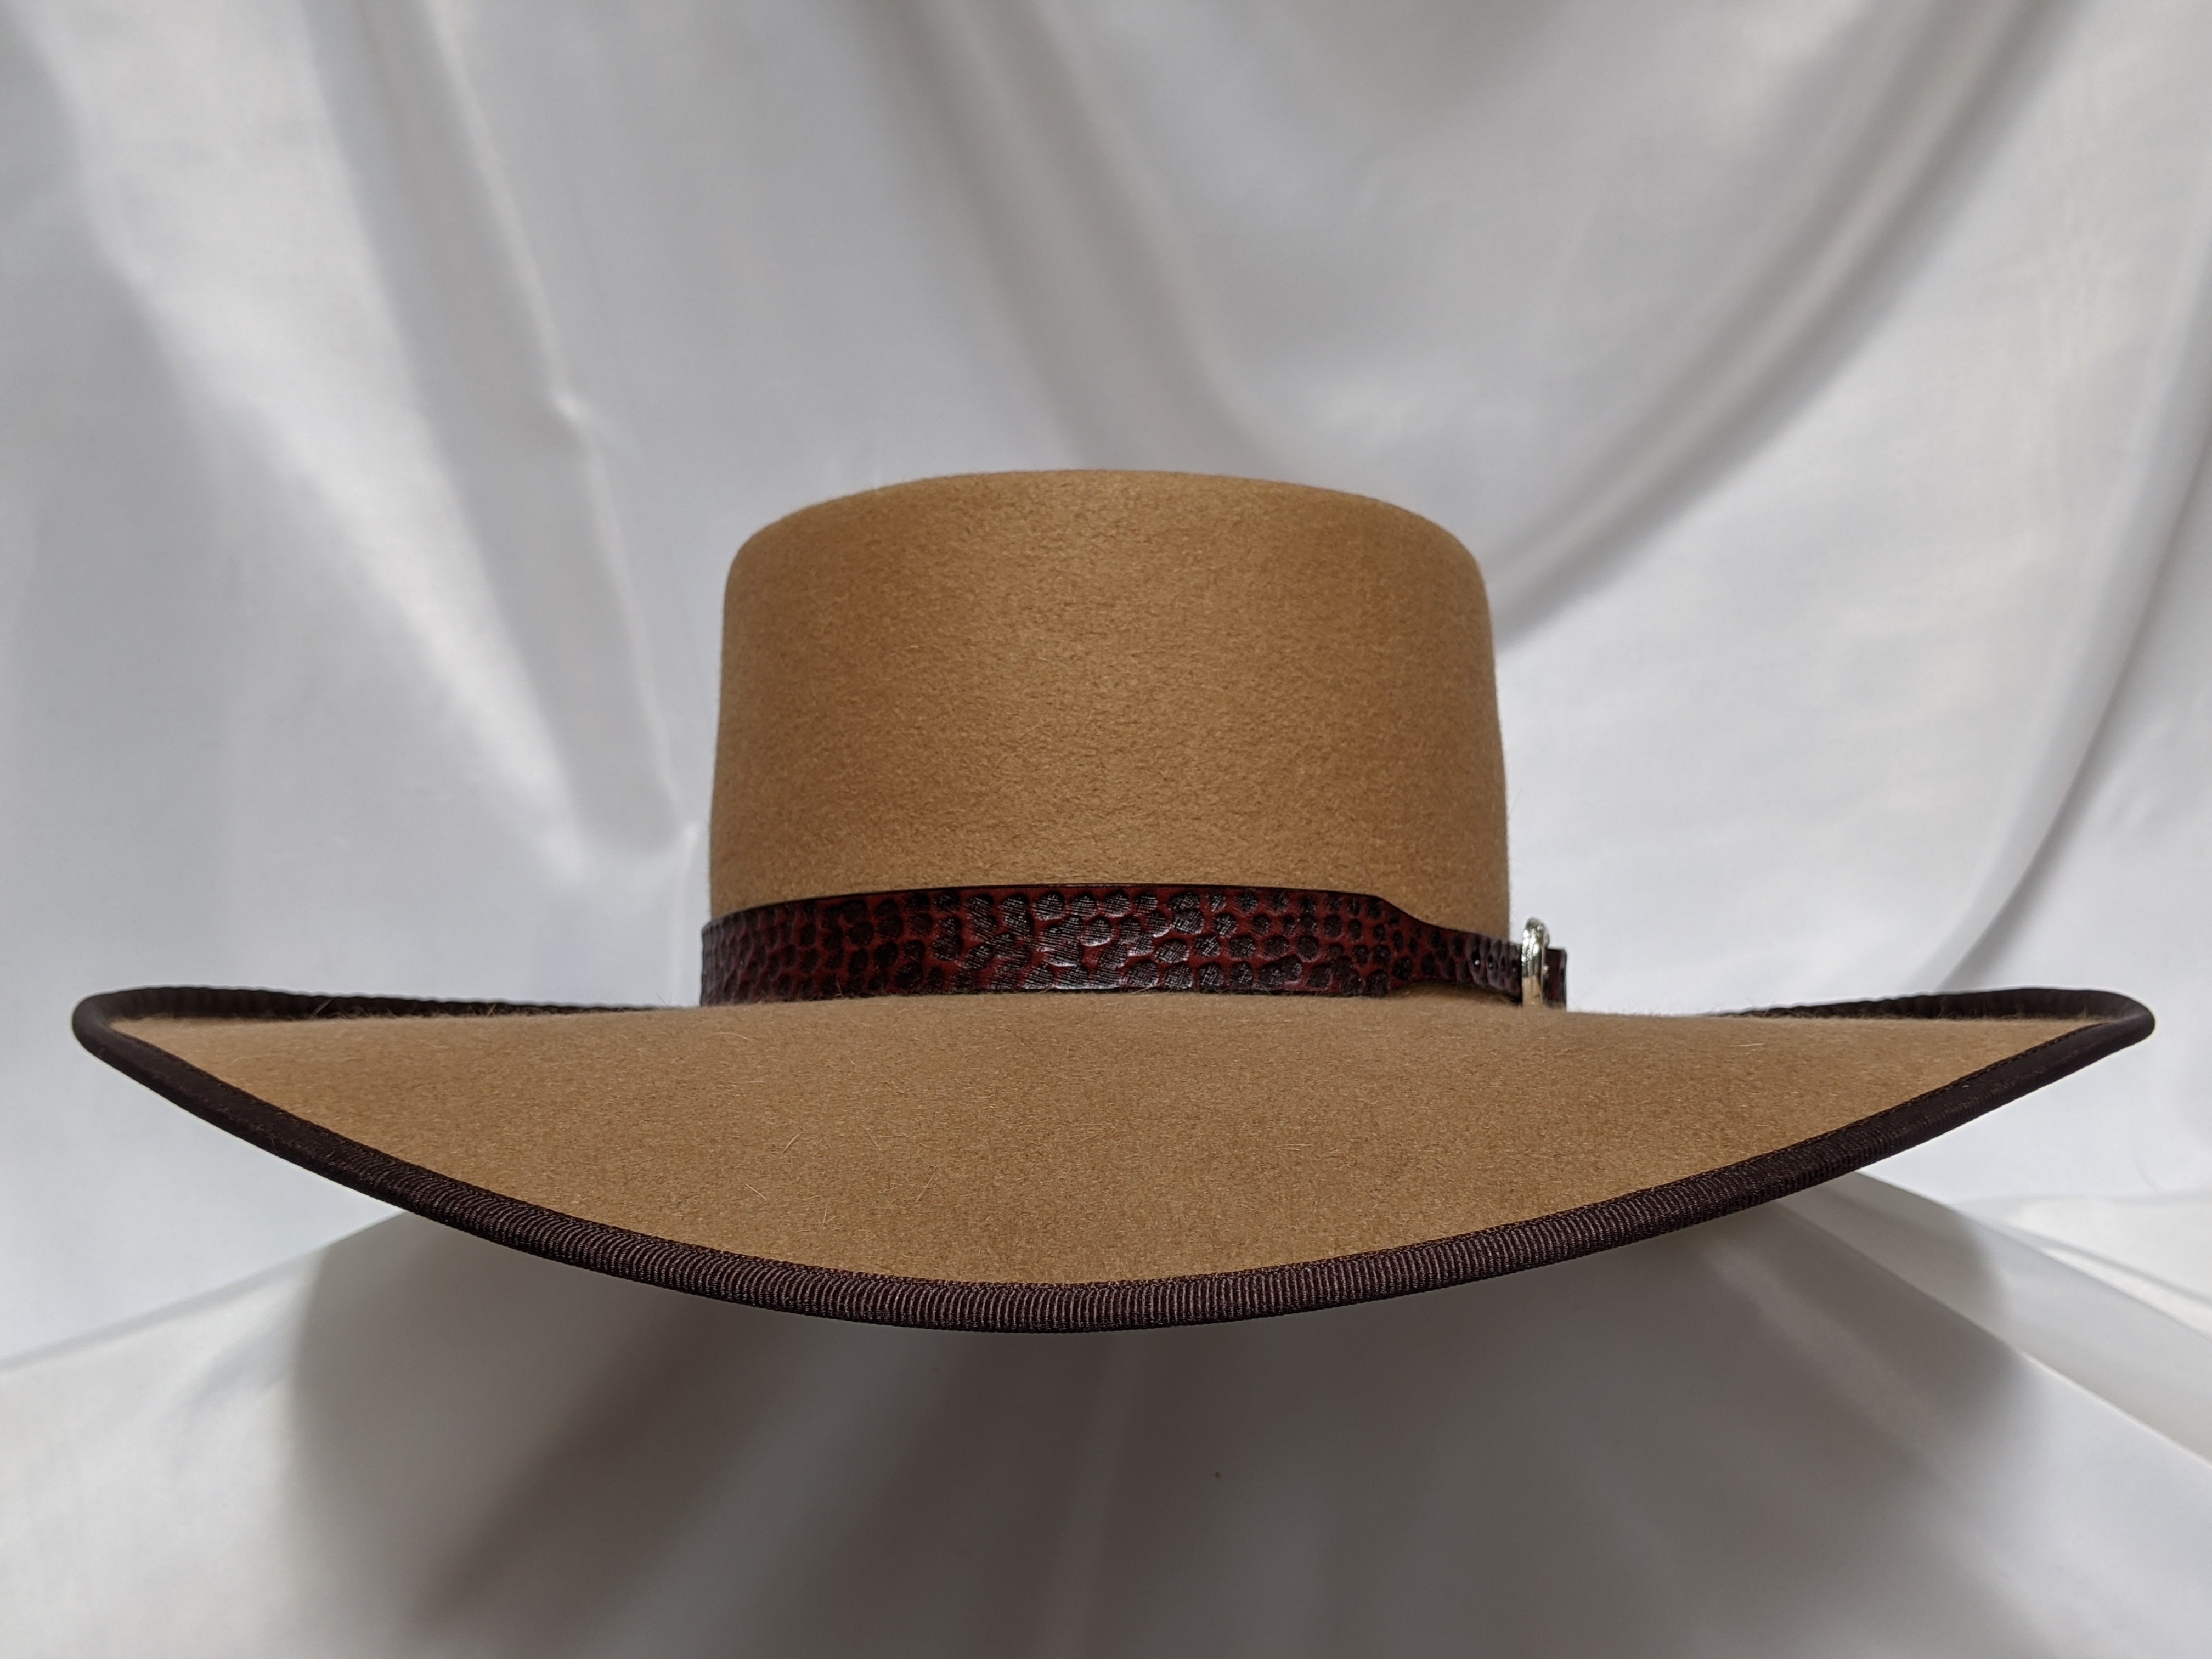 STETSON COWBOY HAT WITH ORIGINAL BOX - CAMEL COLOR - SIZE 6-7/8